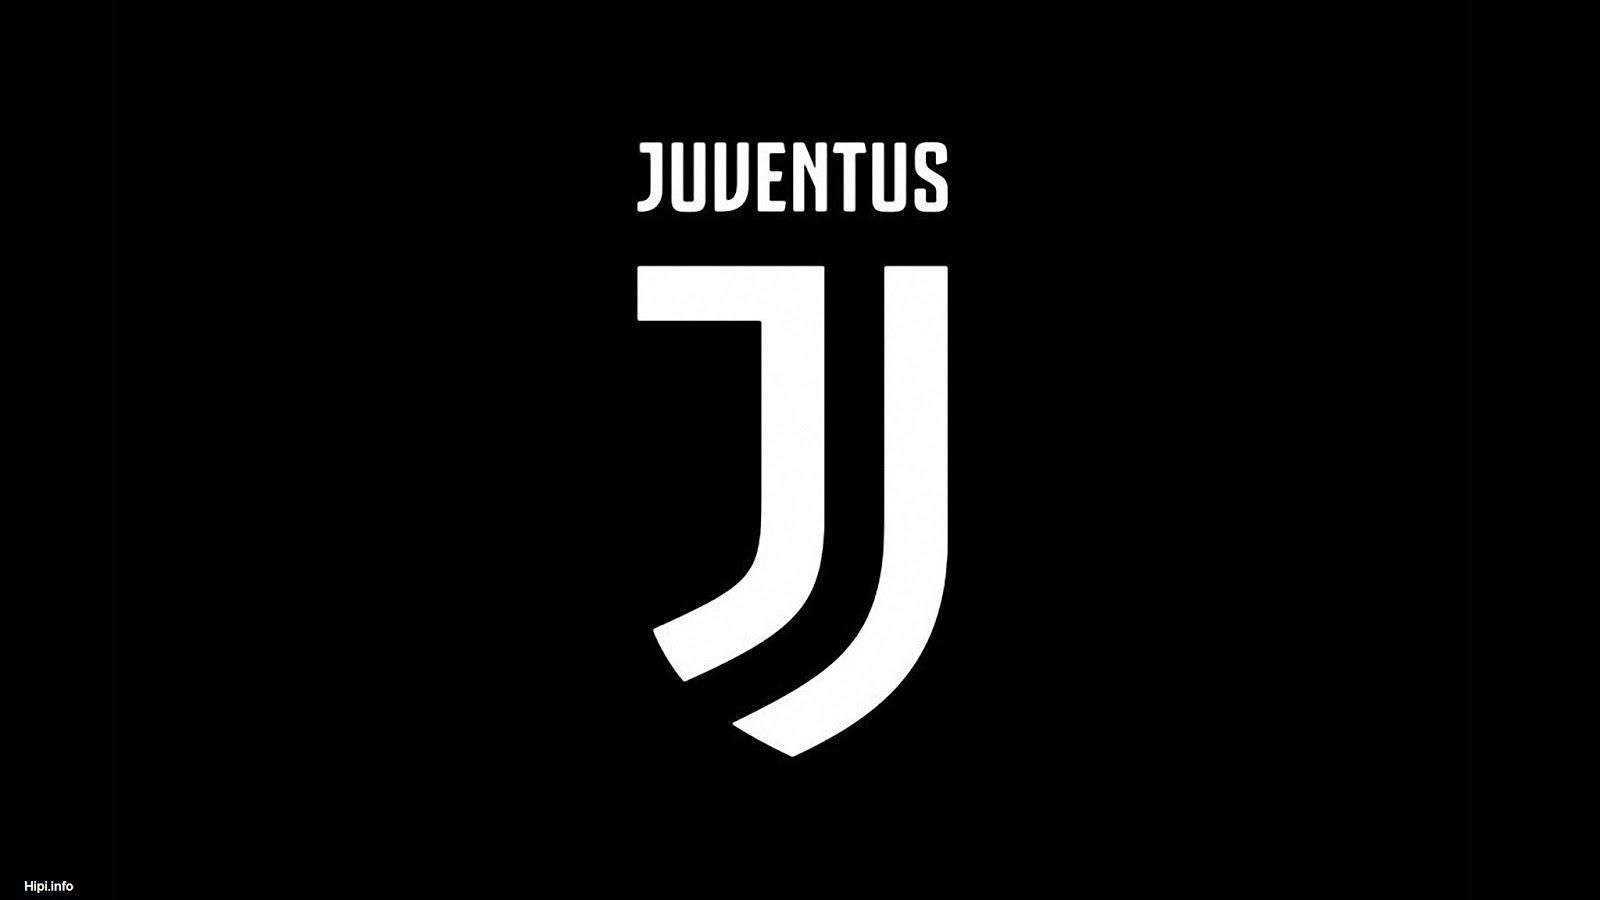 8. Juventus